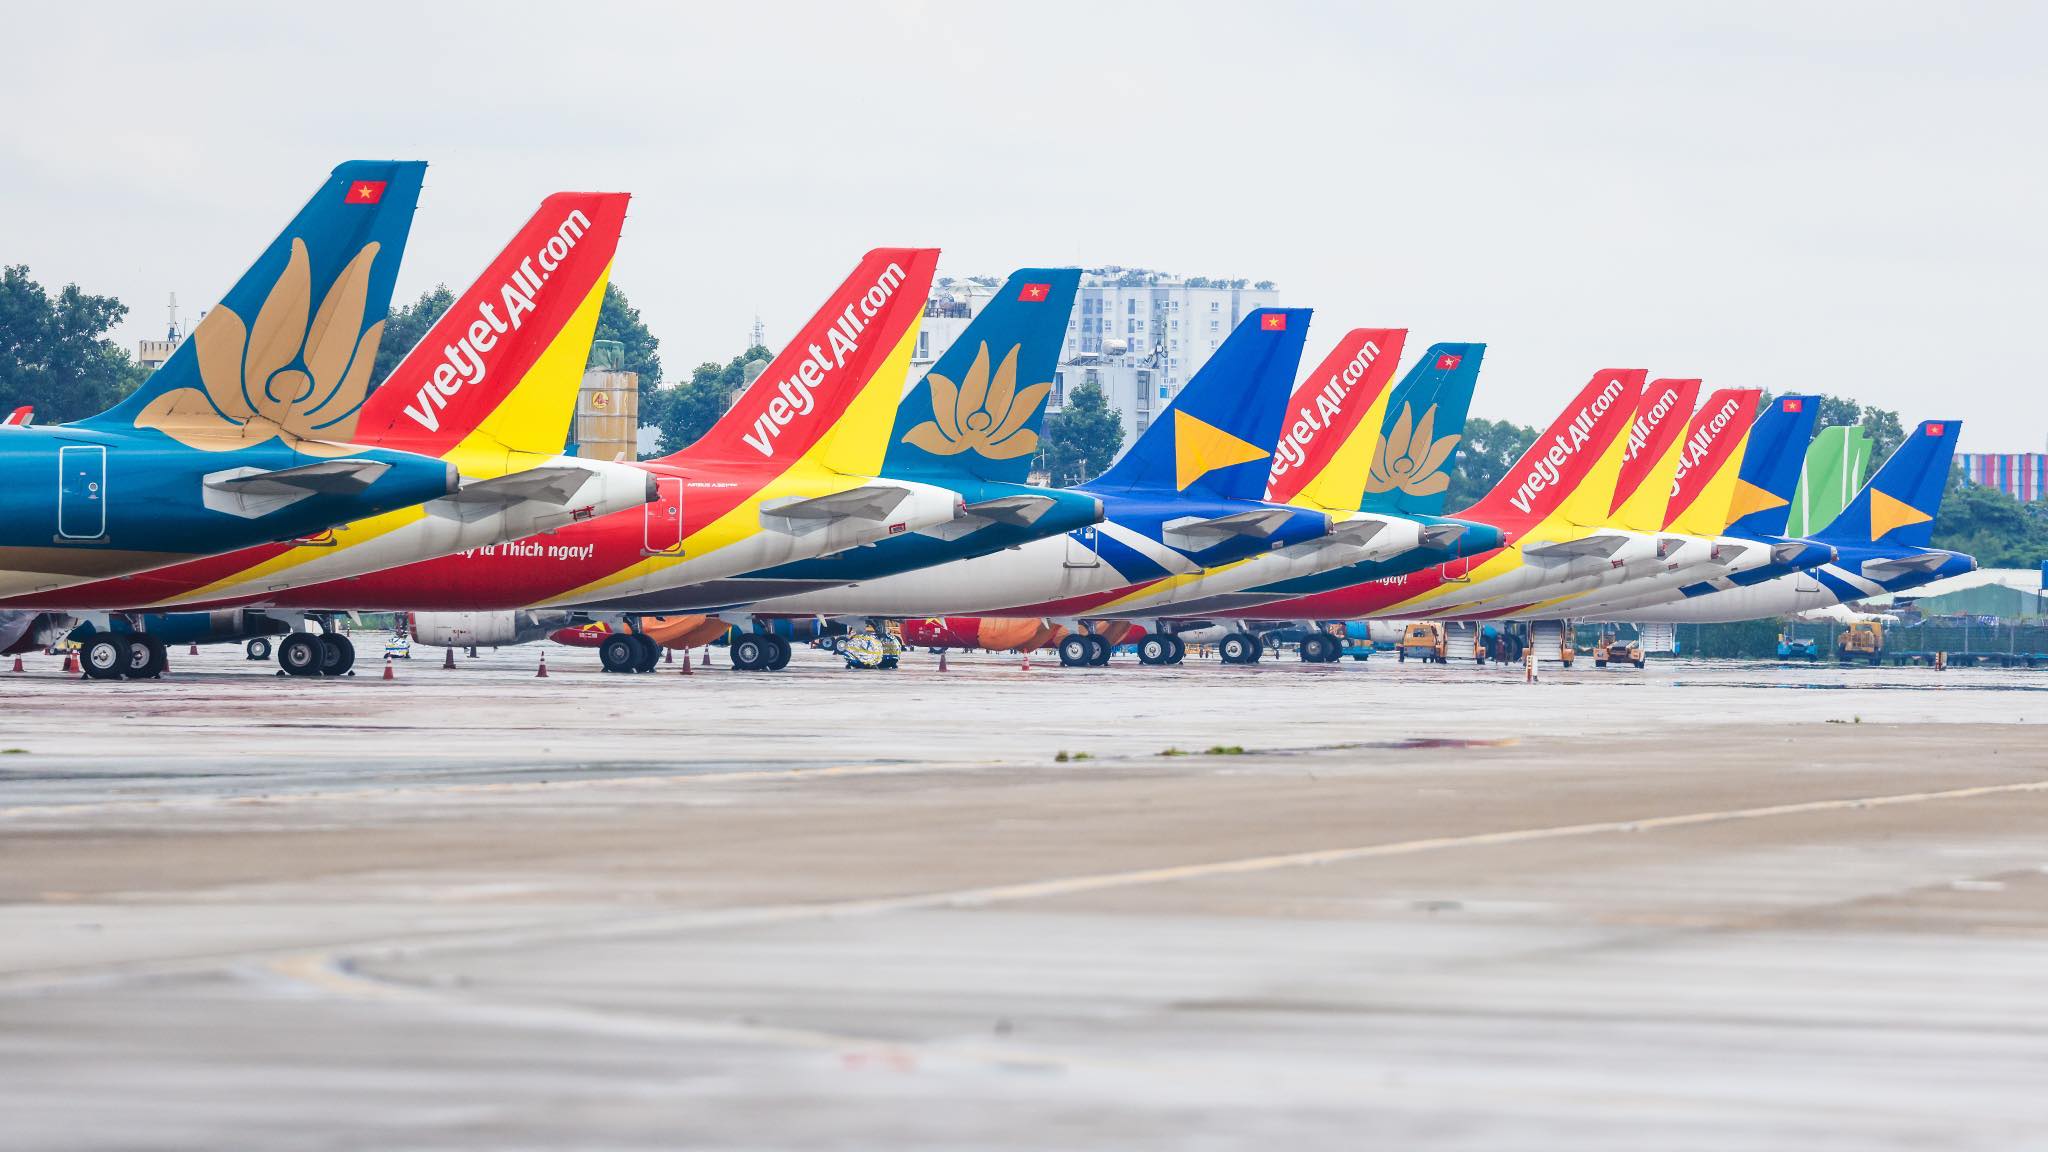 Đội tàu bay hiện giảm mạnh về số lượng do tình trạng khó khăn của một số hãng hàng không. Ảnh: Vietnam Airlines